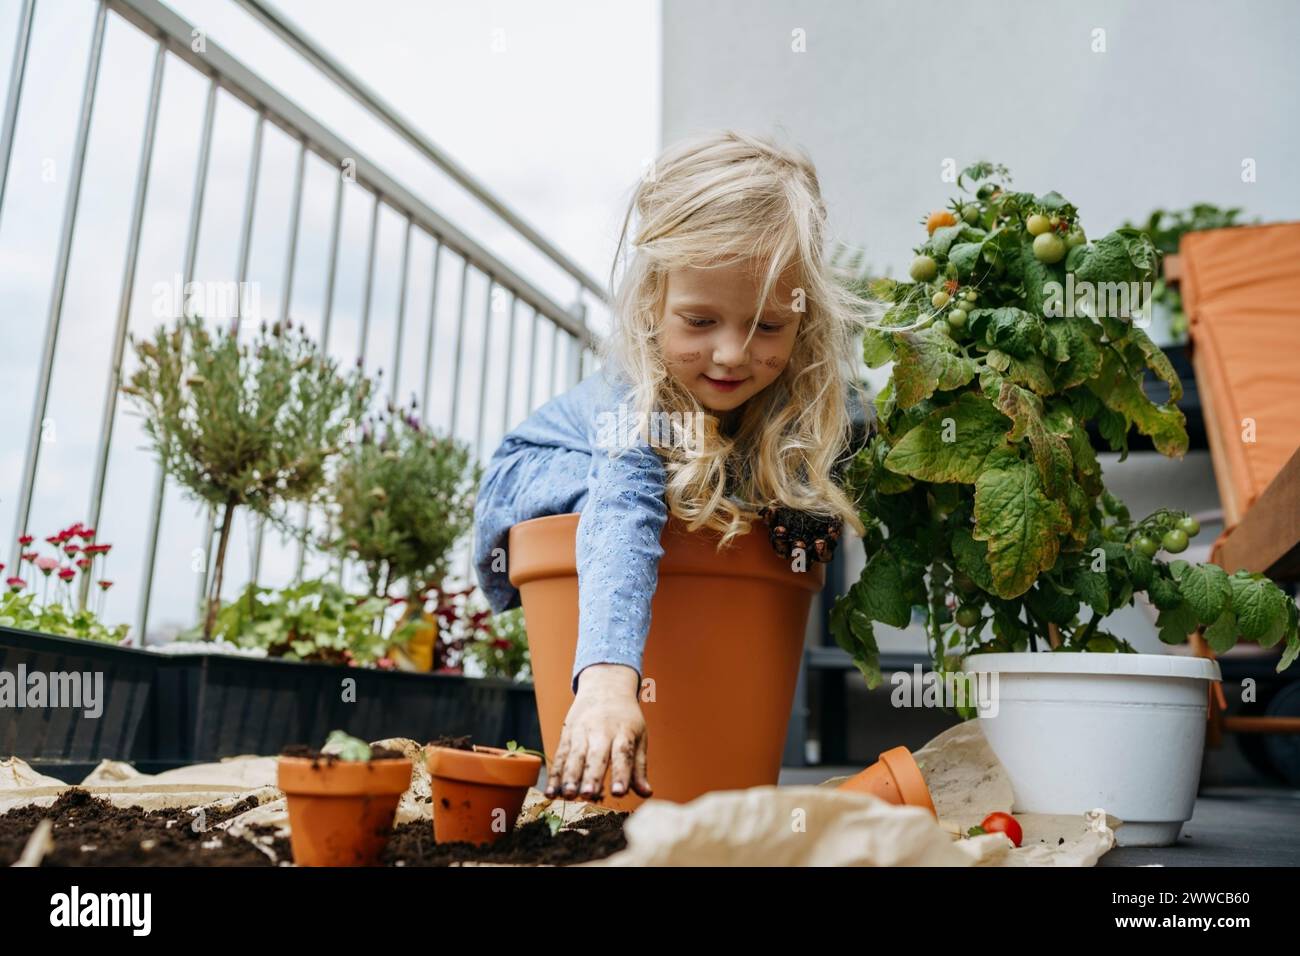 Schelmiges Mädchen mit schmutzigen Händen, das in einem Topf neben Tomatenpflanze auf dem Balkon sitzt Stockfoto